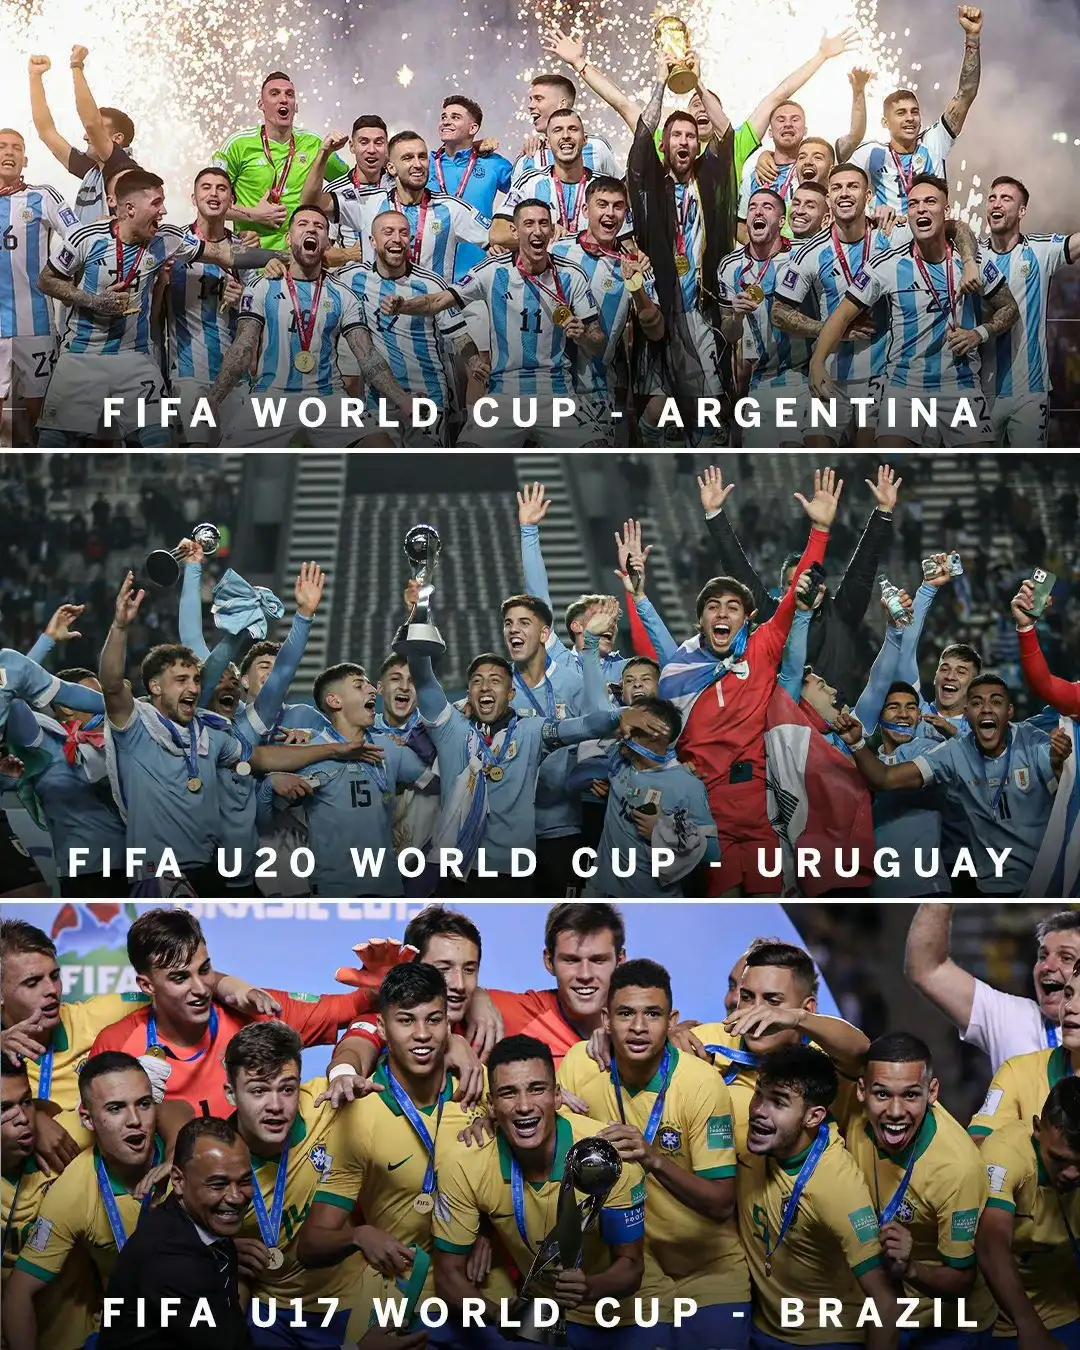 谁说南美足球不行的，他们拿到所有级别冠军。

去年阿根廷是世界杯冠军。

刚刚乌